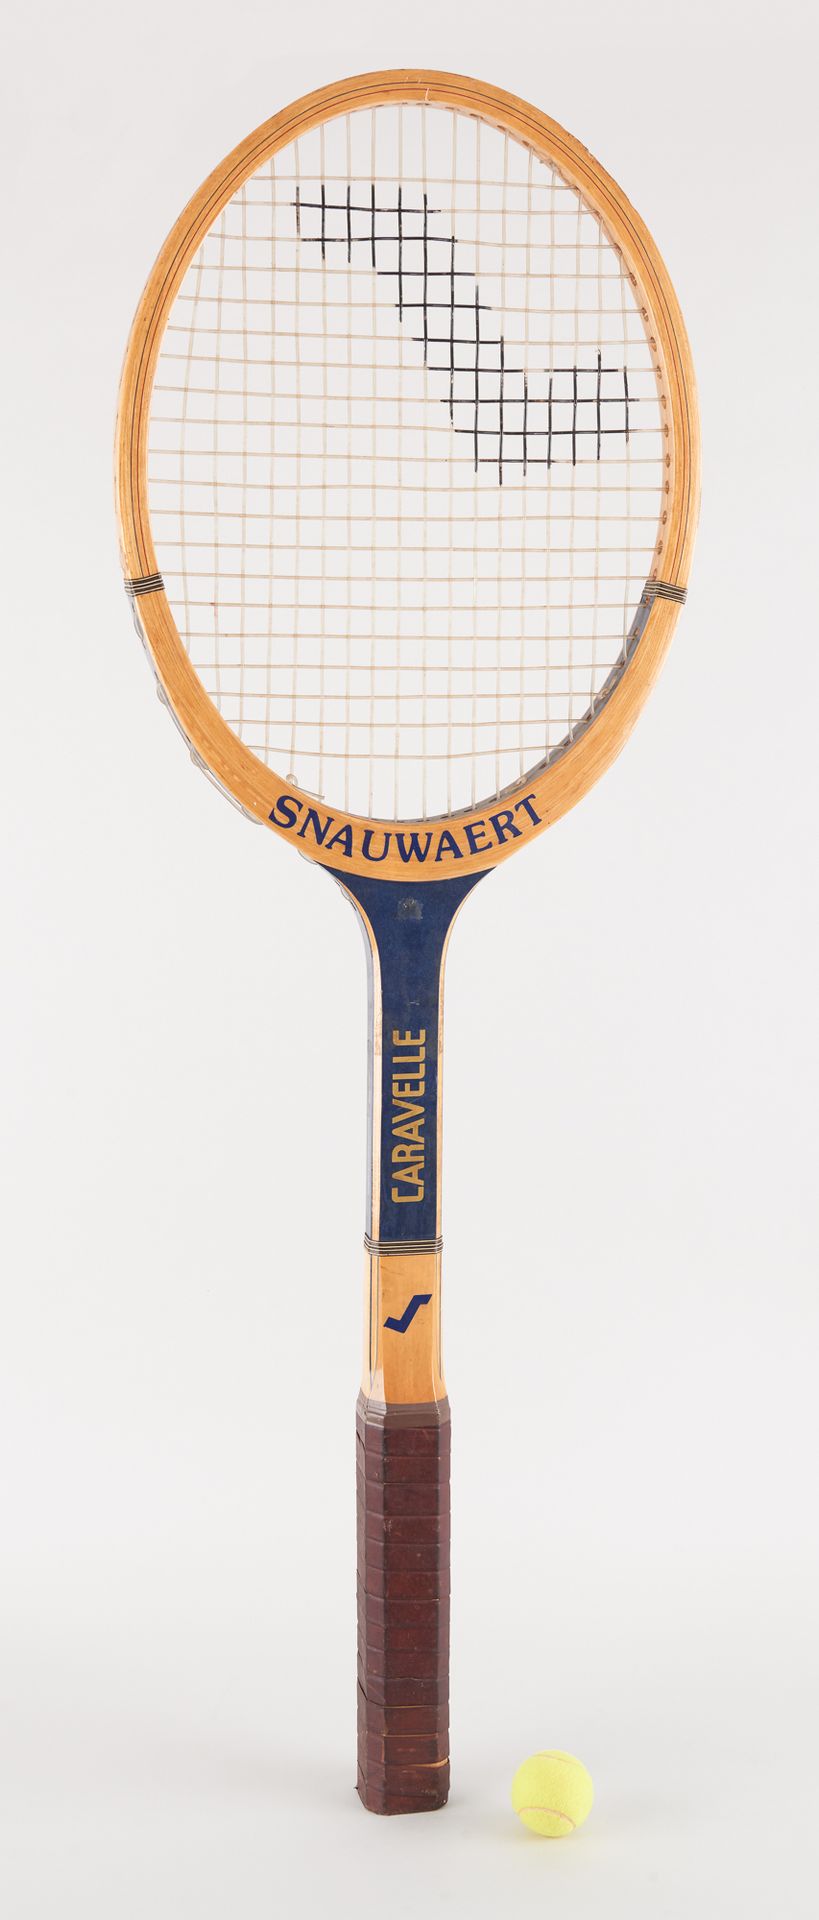 Snauwaert. Objet d'Art: Raquette de tennis de promotion.

De marque Snauwaert, m&hellip;